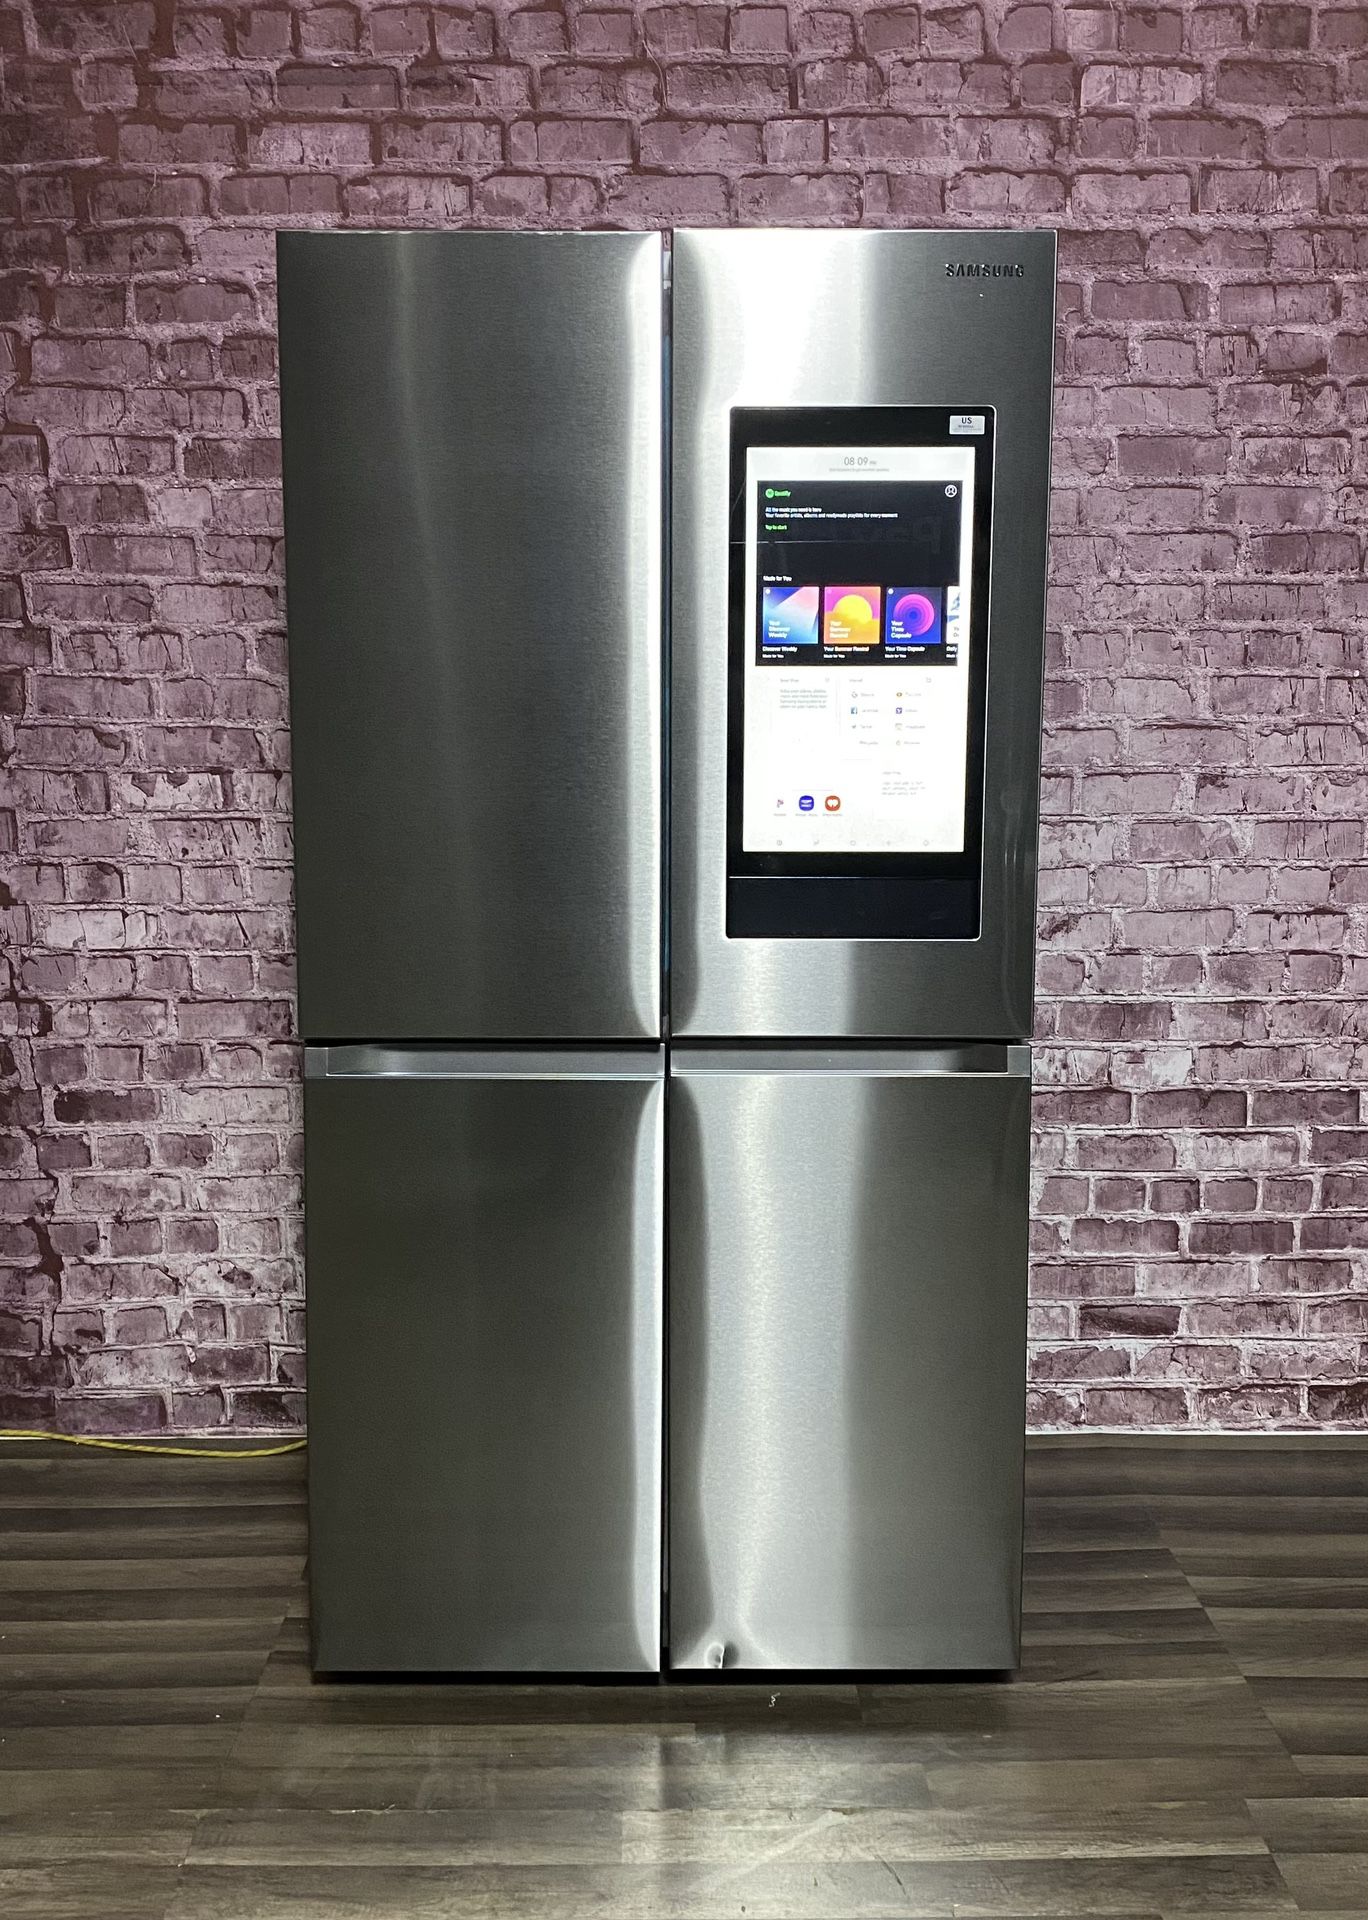 Samsung Flex Refrigerator w/Warranty! STK # R1188A